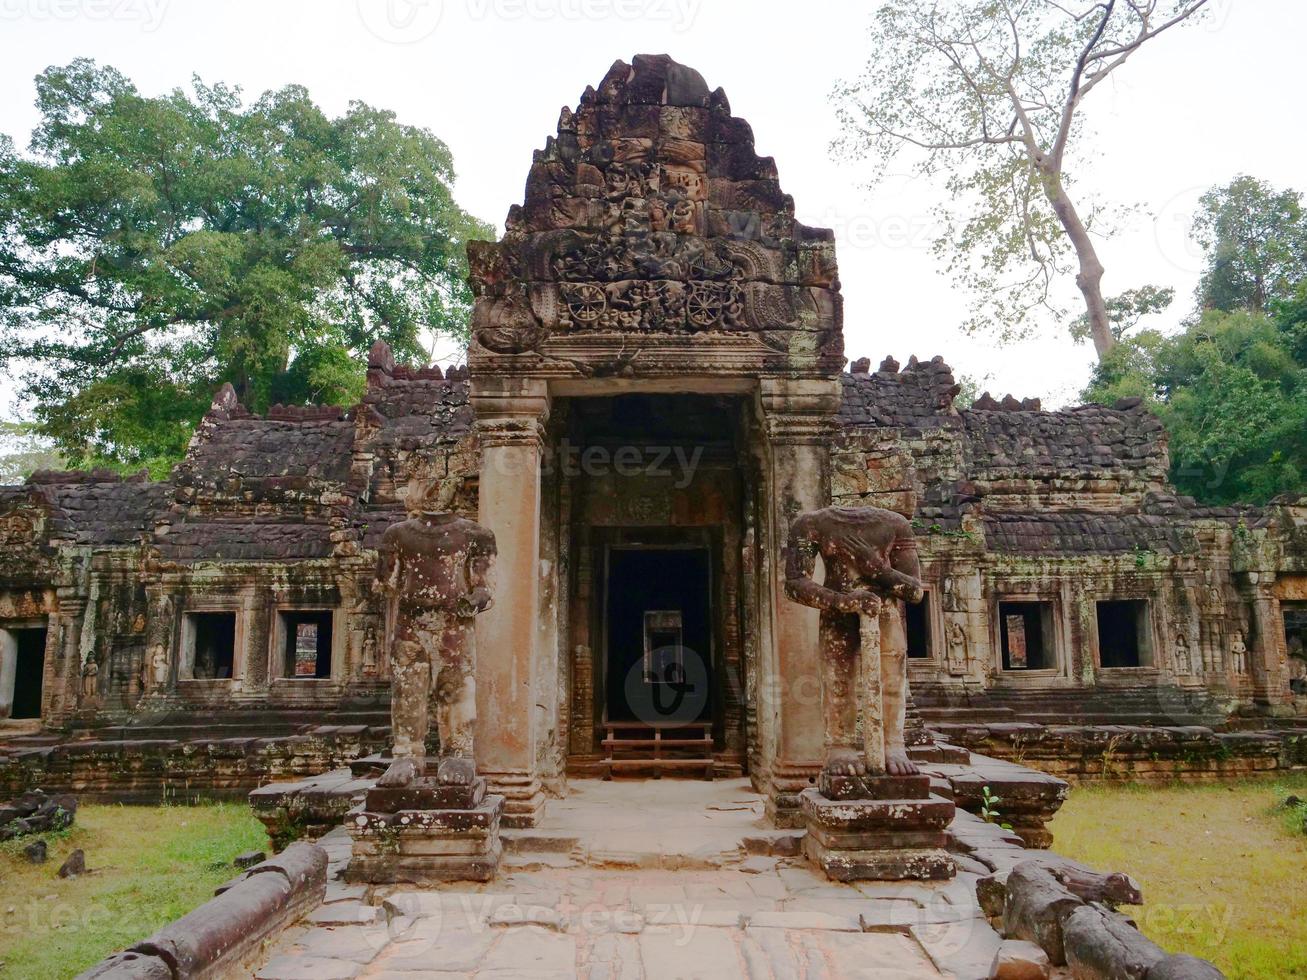 Arquitectura de piedra demolida en el templo de Preah Khan, Siem Reap, Camboya foto